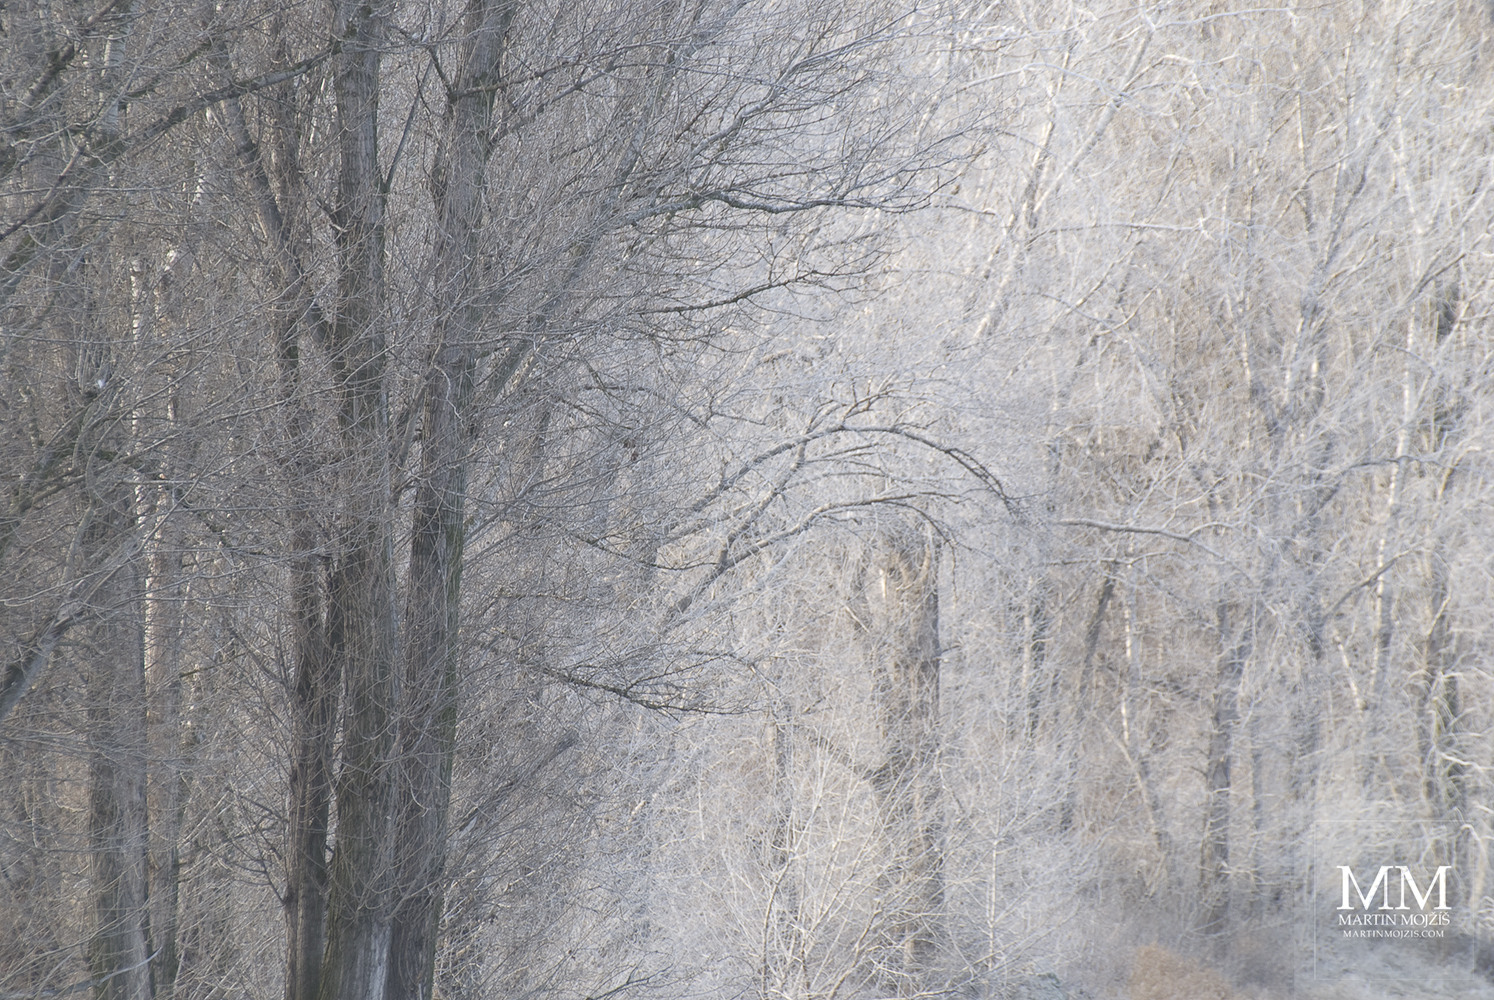 Chvějící se světlo v mlhavých, ojíněných větvích stromů. Umělecká fotografie Martina Mojžíše s názvem NEVYŘČENÉ.